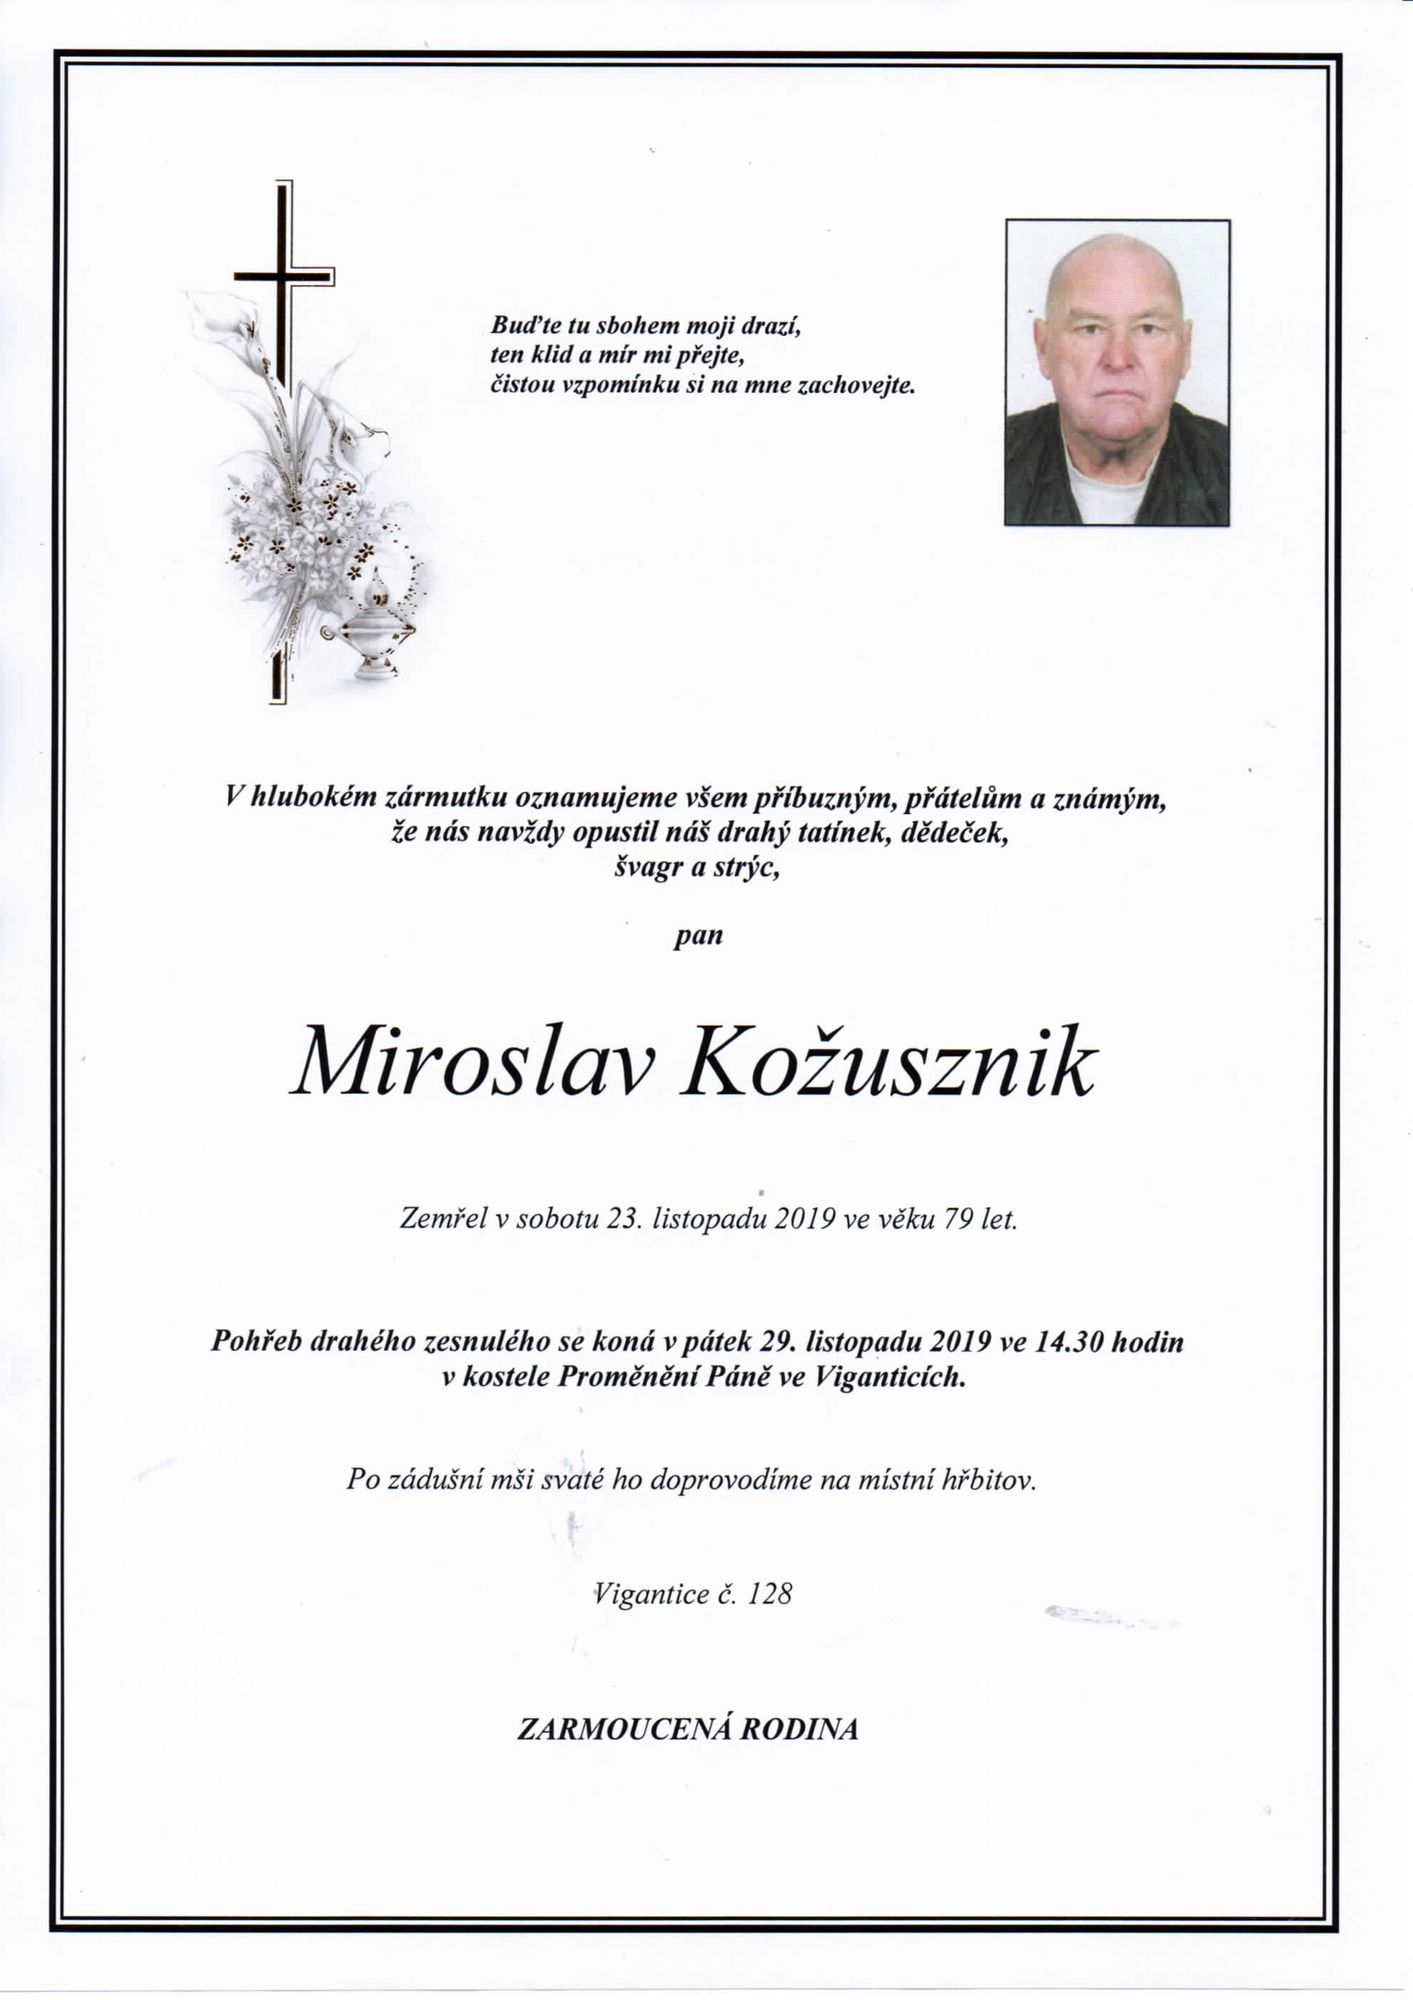 Miroslav Kožusznik